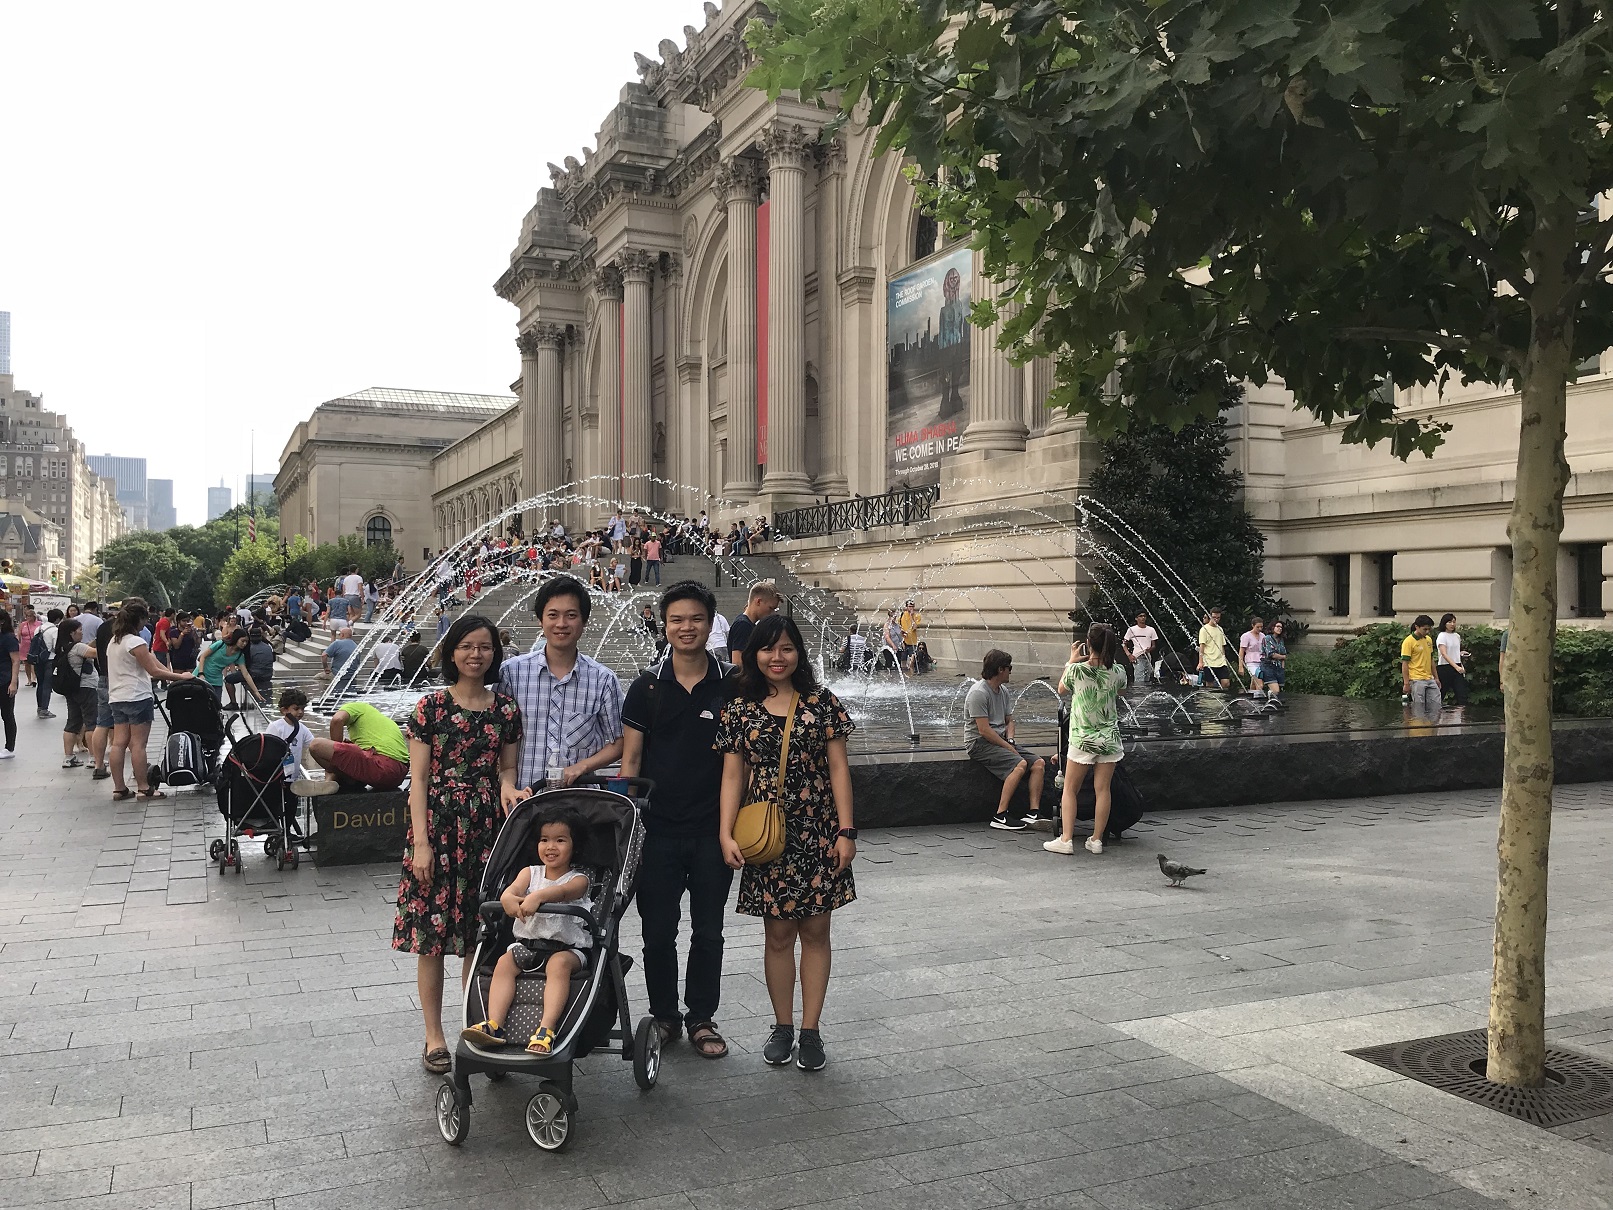 at Metropolitan Museum of Art